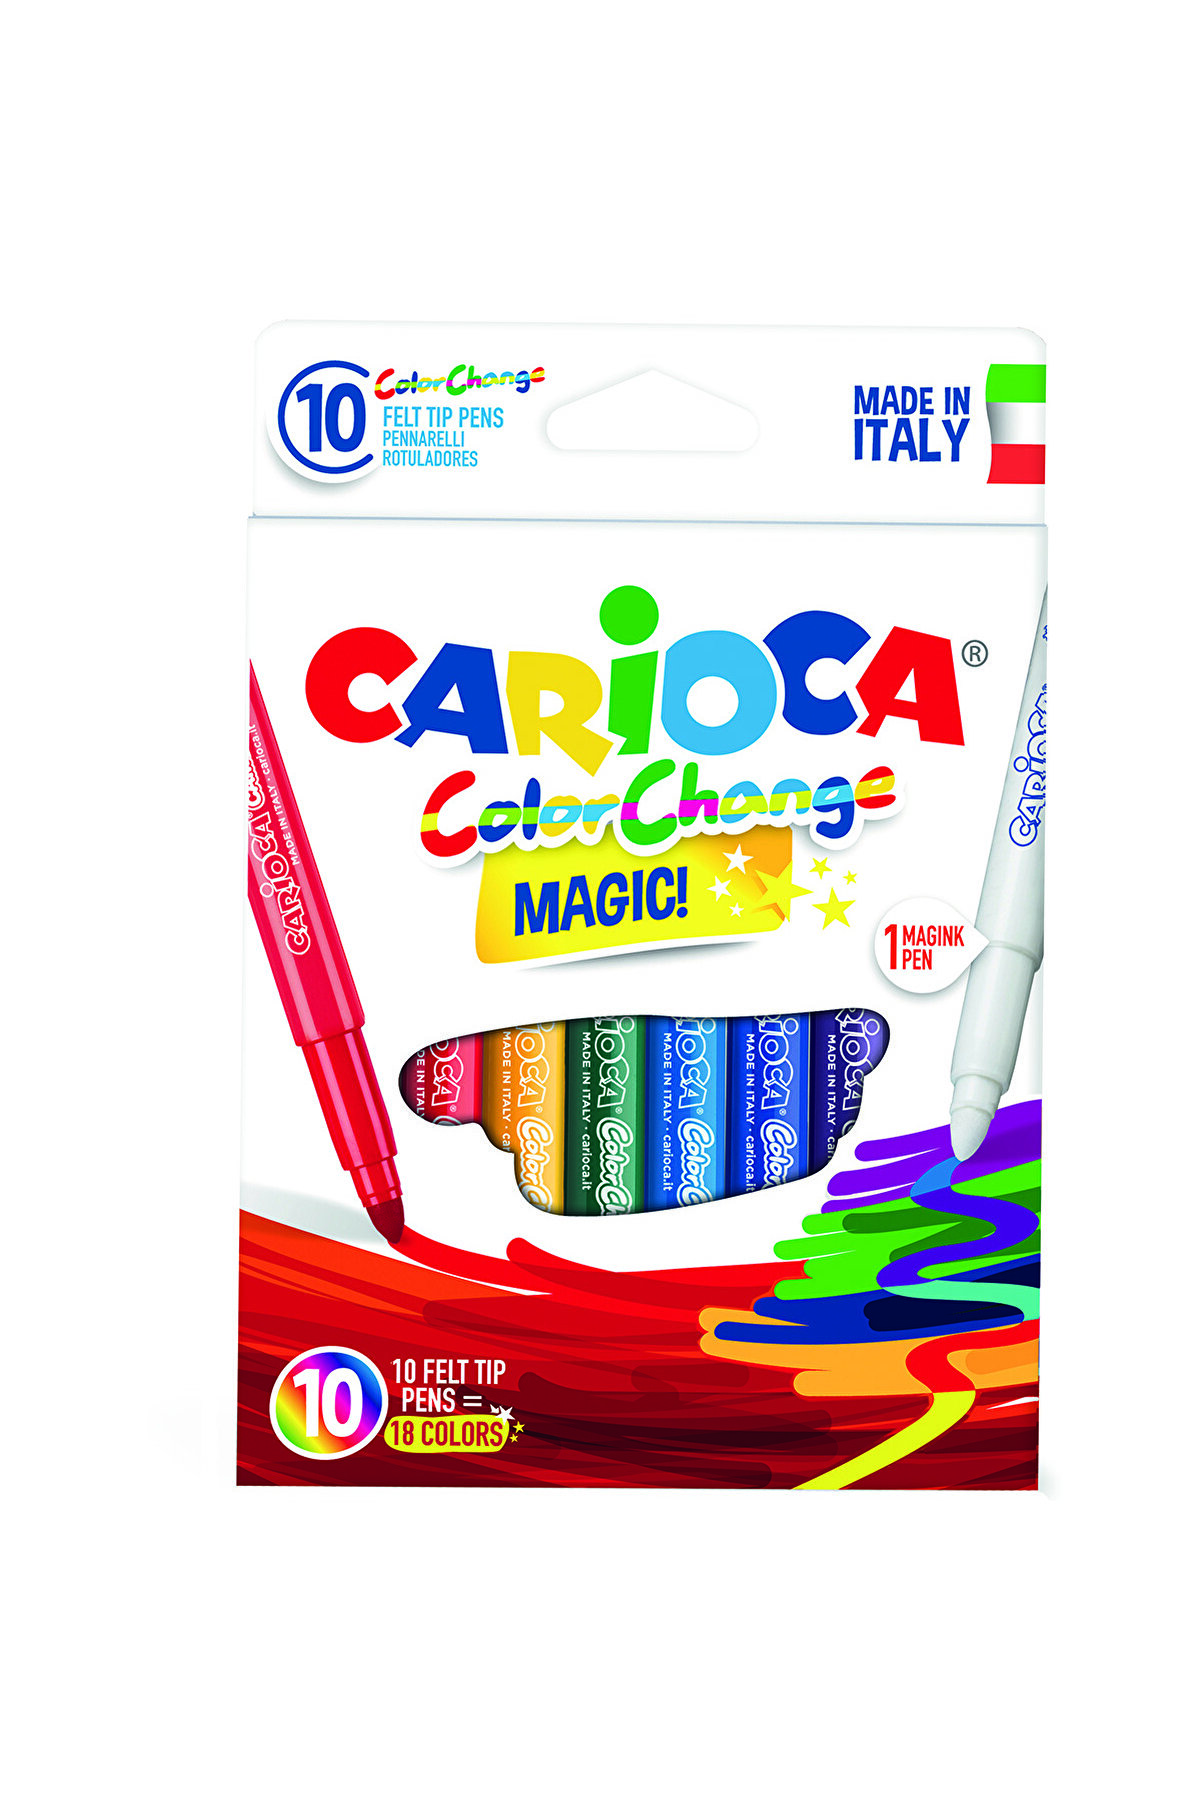 Carioca Renk Değiştiren Sihirli Keçeli Kalemler (9 RENK 1 RENK DEĞİŞTİRİCİ BEYAZ KALEM)